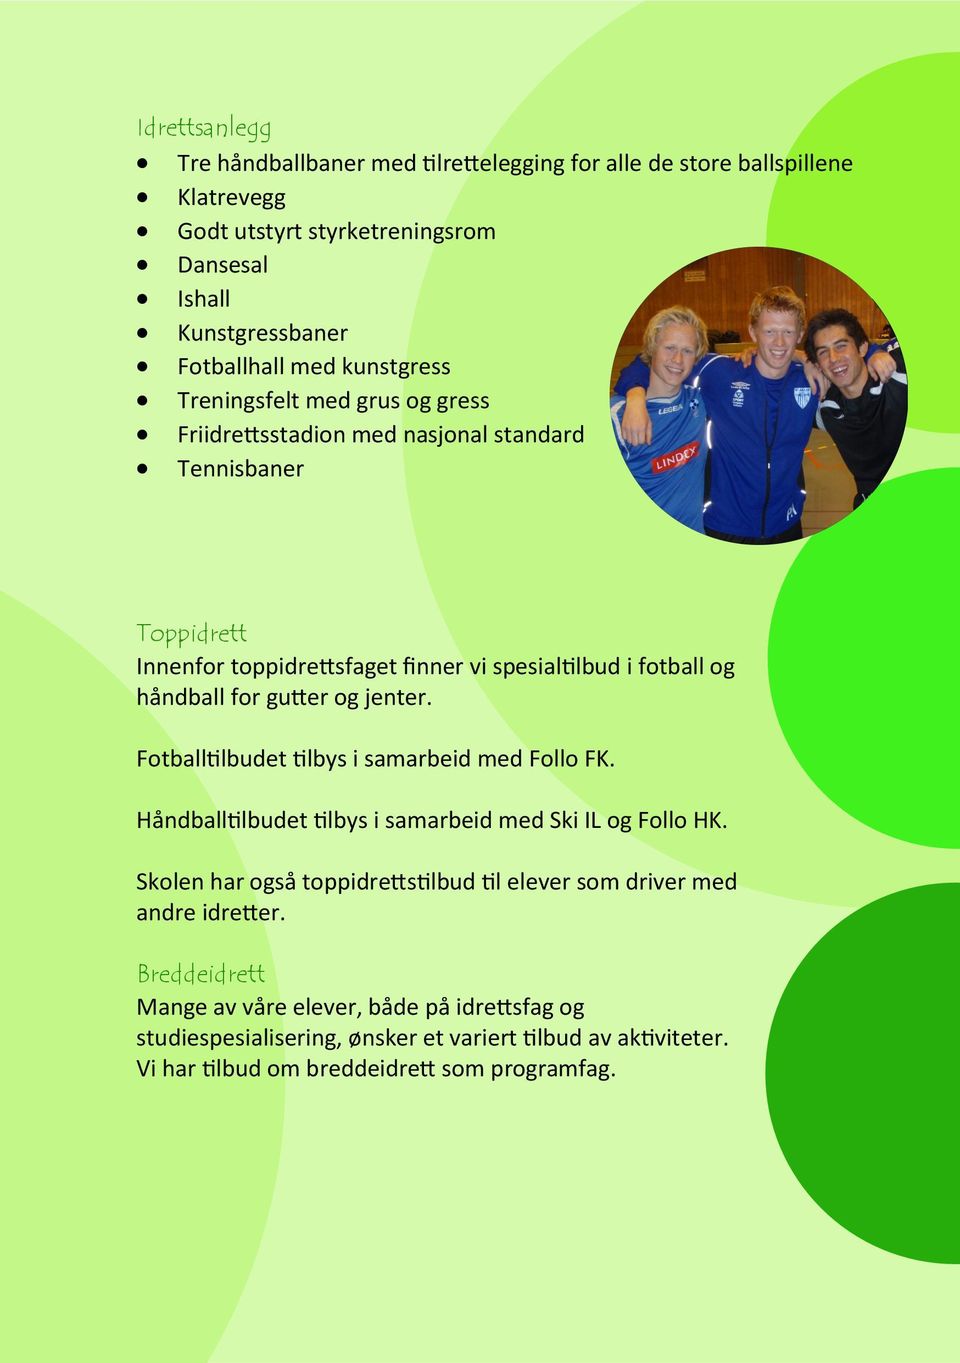 gutter og jenter. Fotballtilbudet tilbys i samarbeid med Follo FK. Håndballtilbudet tilbys i samarbeid med Ski IL og Follo HK.